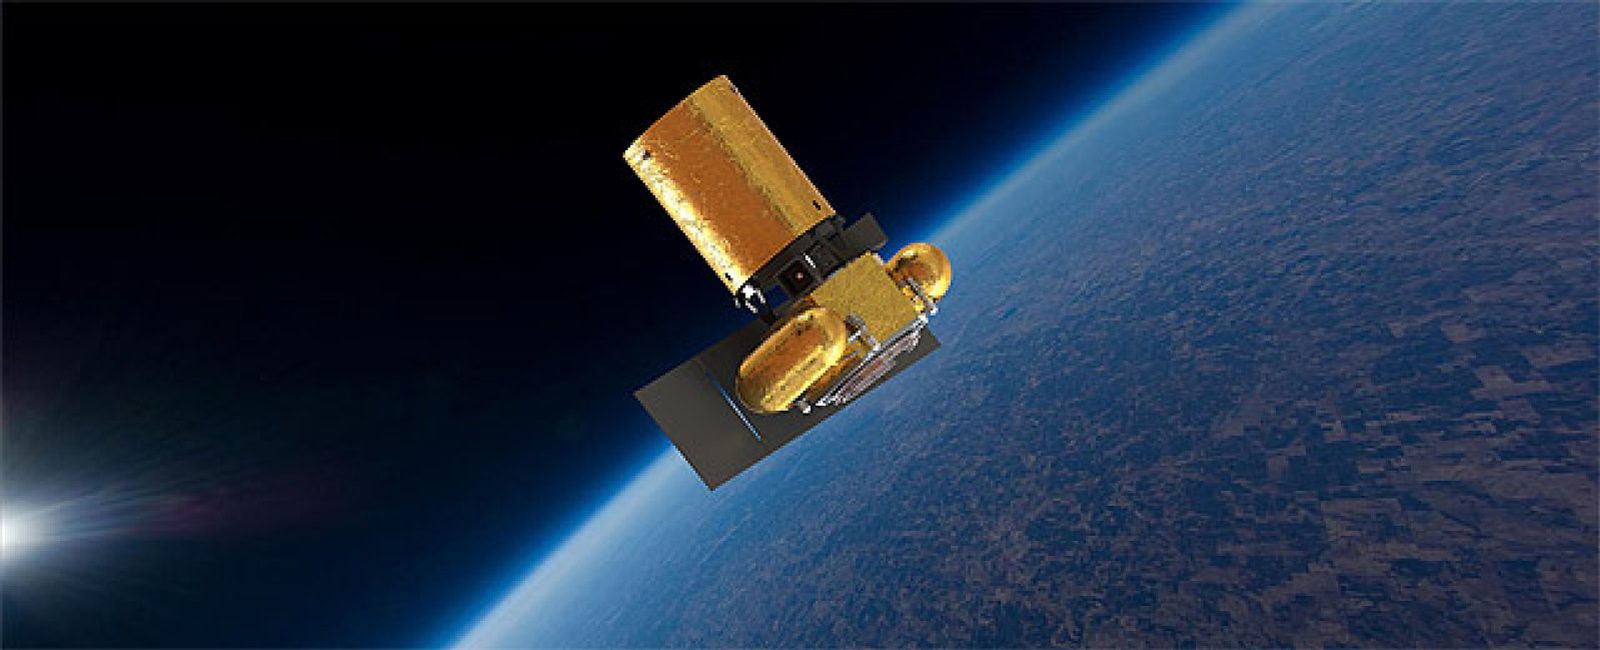 Foto: En 2015 se lanzará el primer satélite financiado por 'crowdfunding'